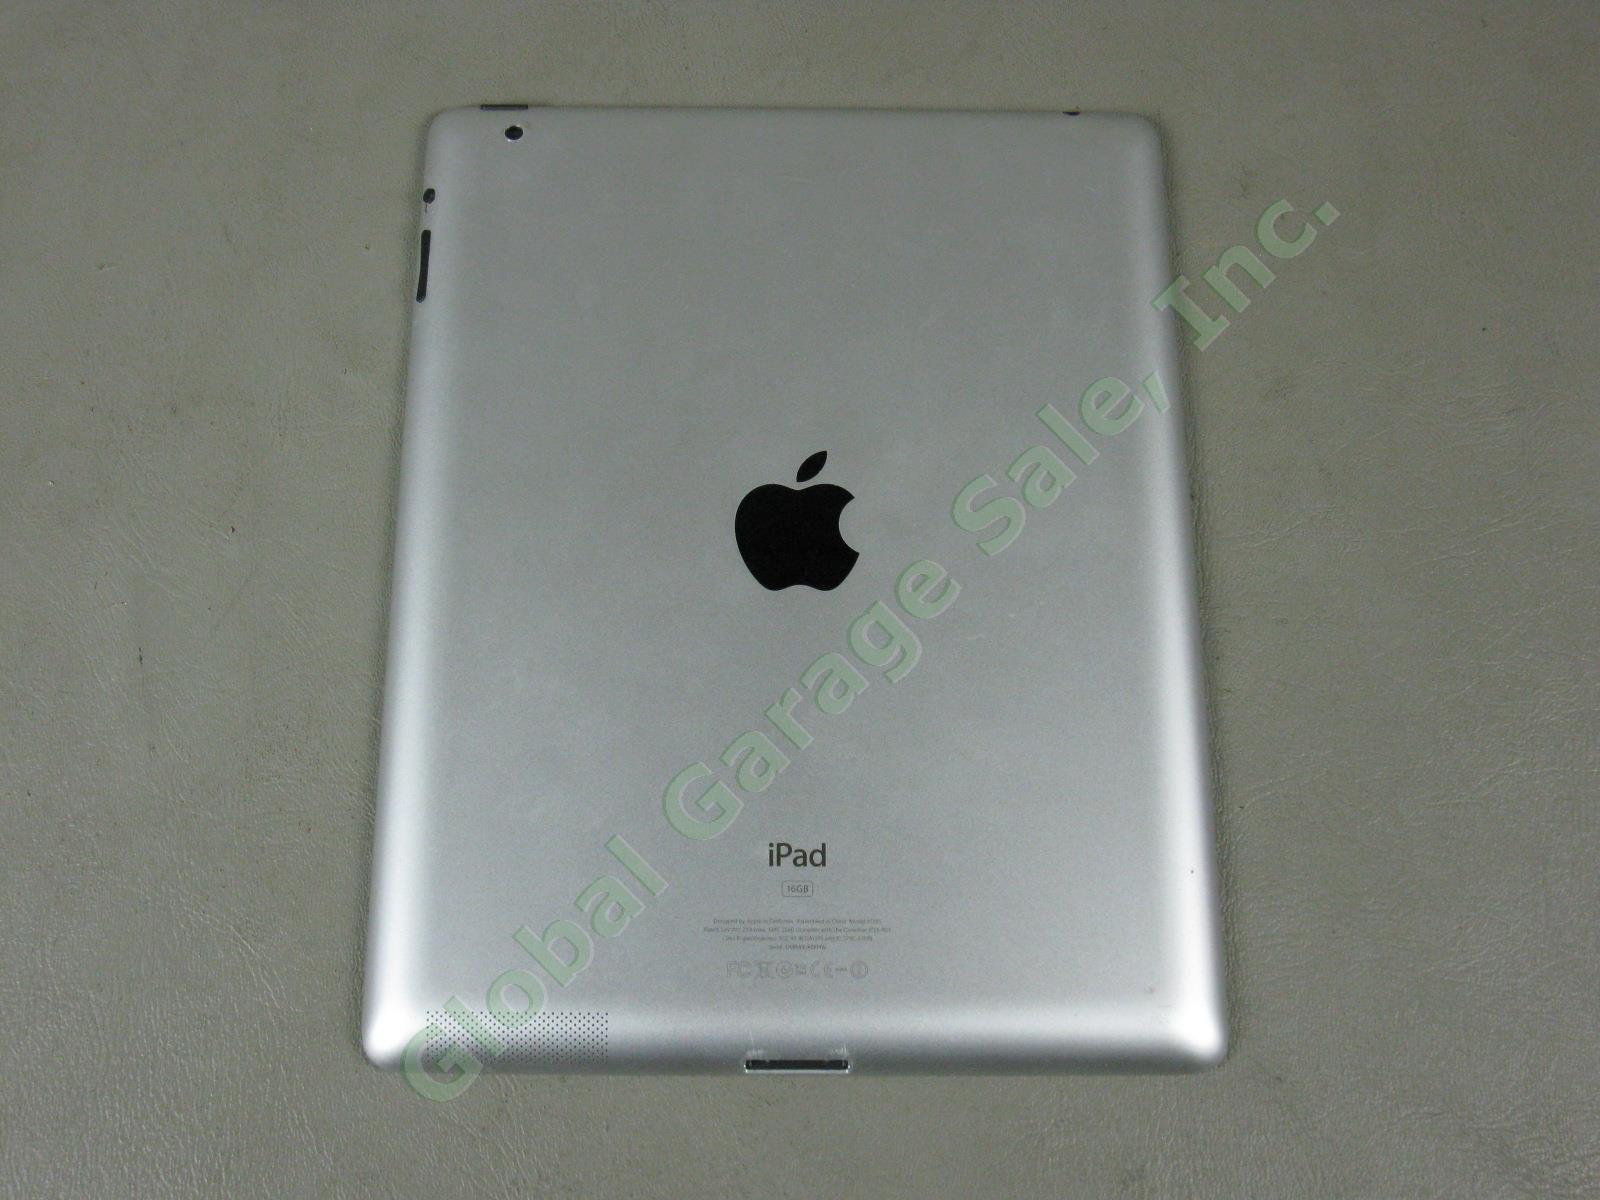 Apple iPad 2 Wifi 16GB Black Tablet Factory Reset MC770LL/A A1395 No Reserve! 3